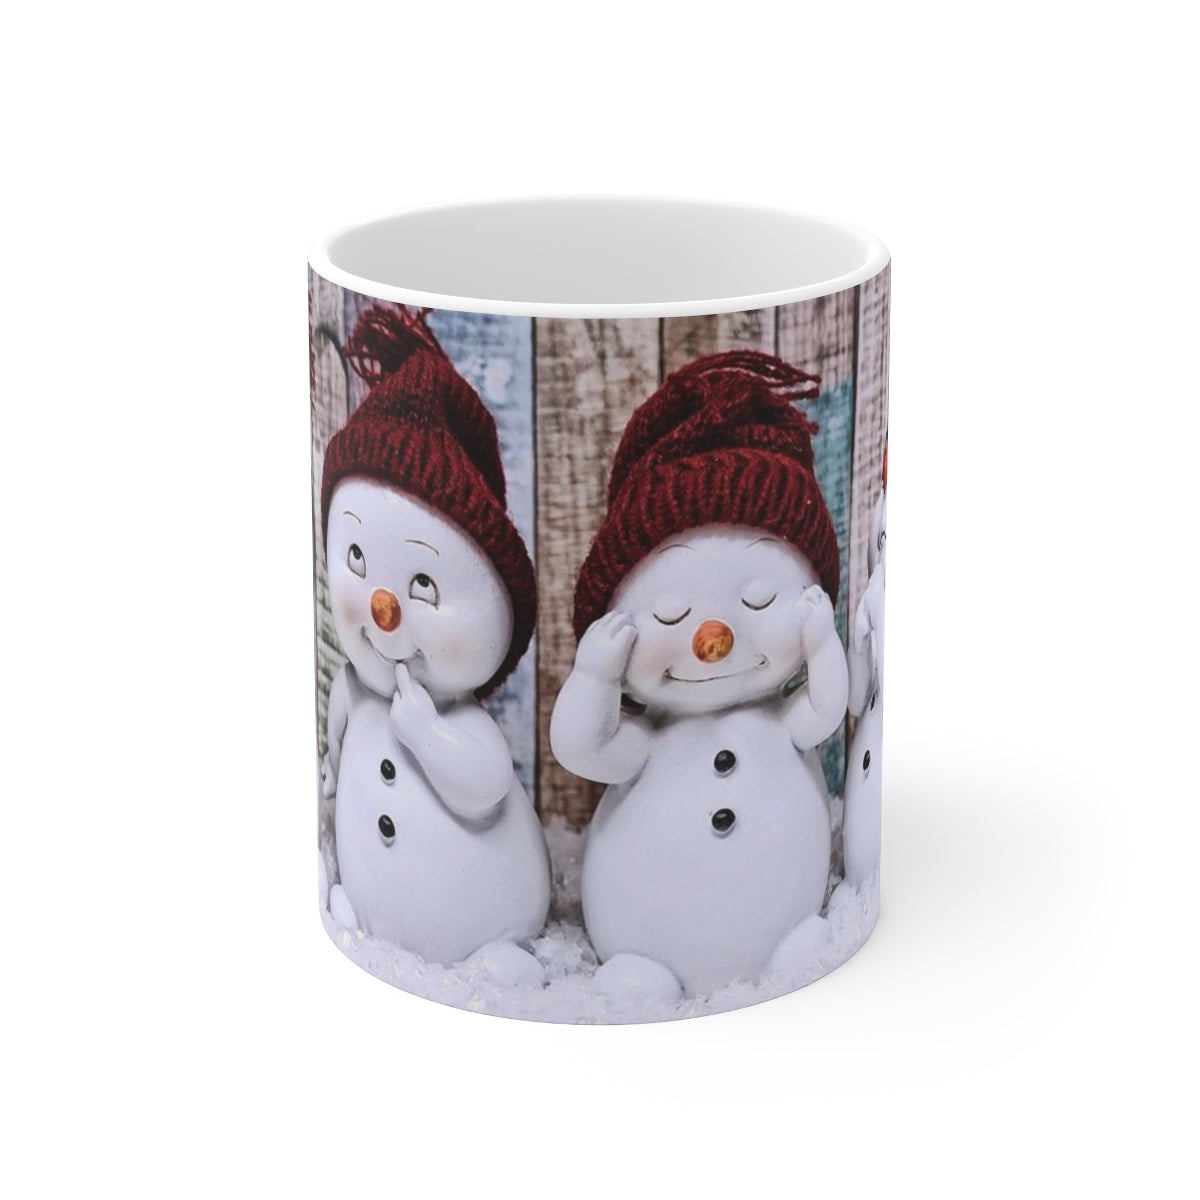 CUSTOM SNOWMAN MUG, Kids Snowman Mug, Chritsmas Snowman Mug, SnowBaby Mug